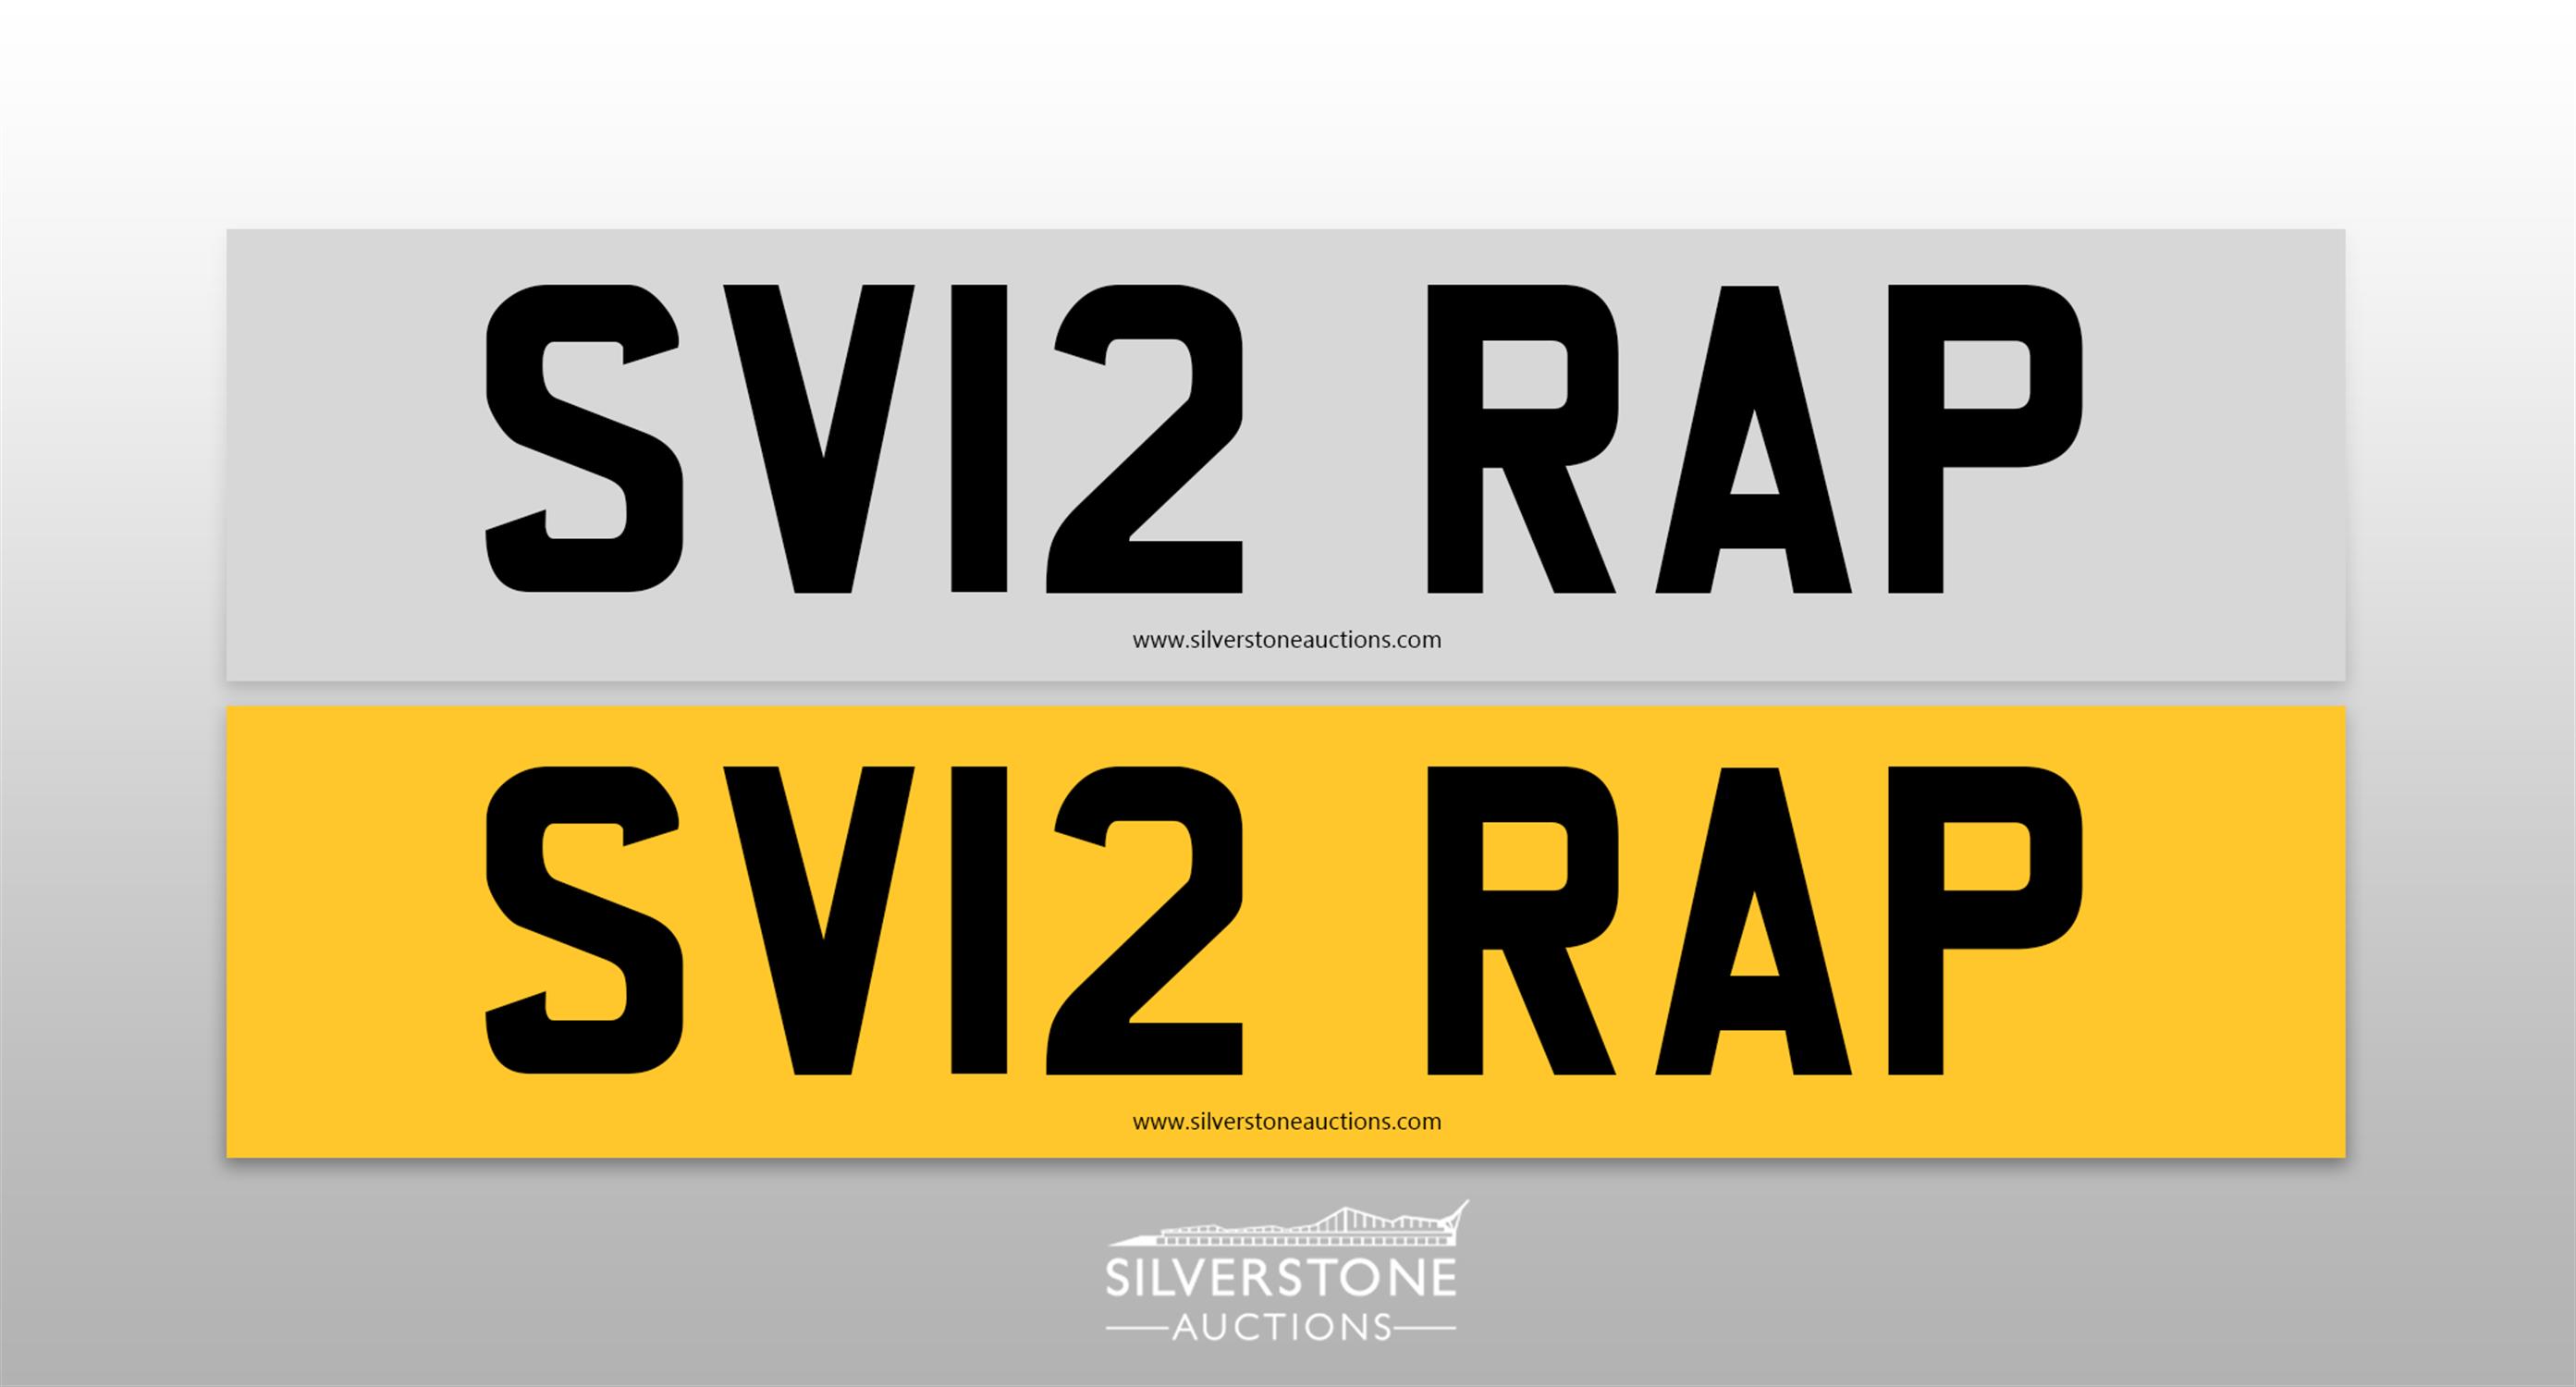 Registration Number SV12 RAP